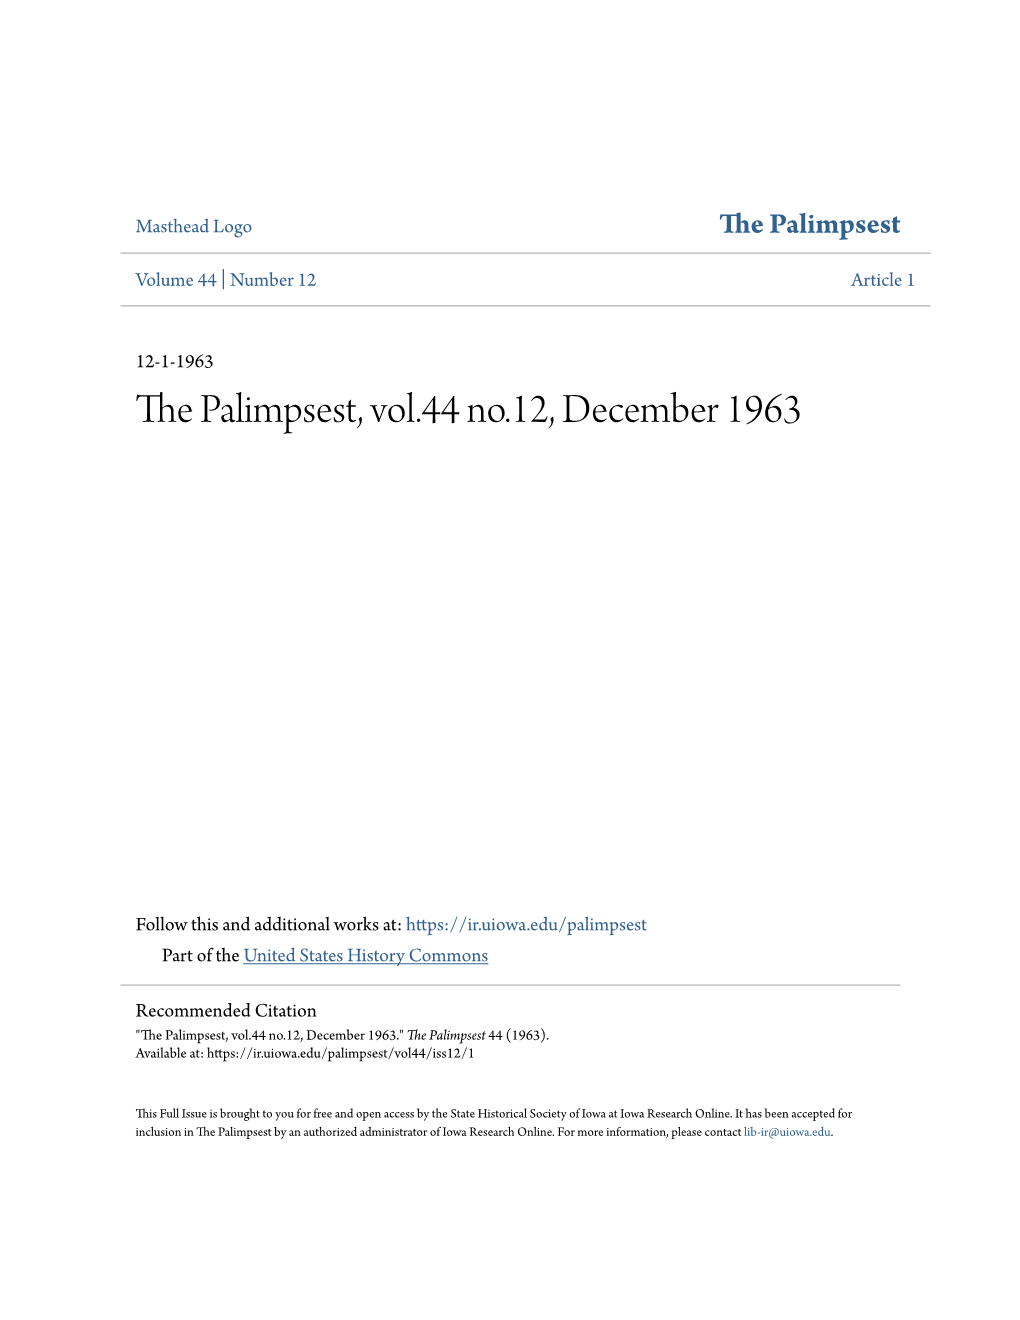 The Palimpsest, Vol.44 No.12, December 1963